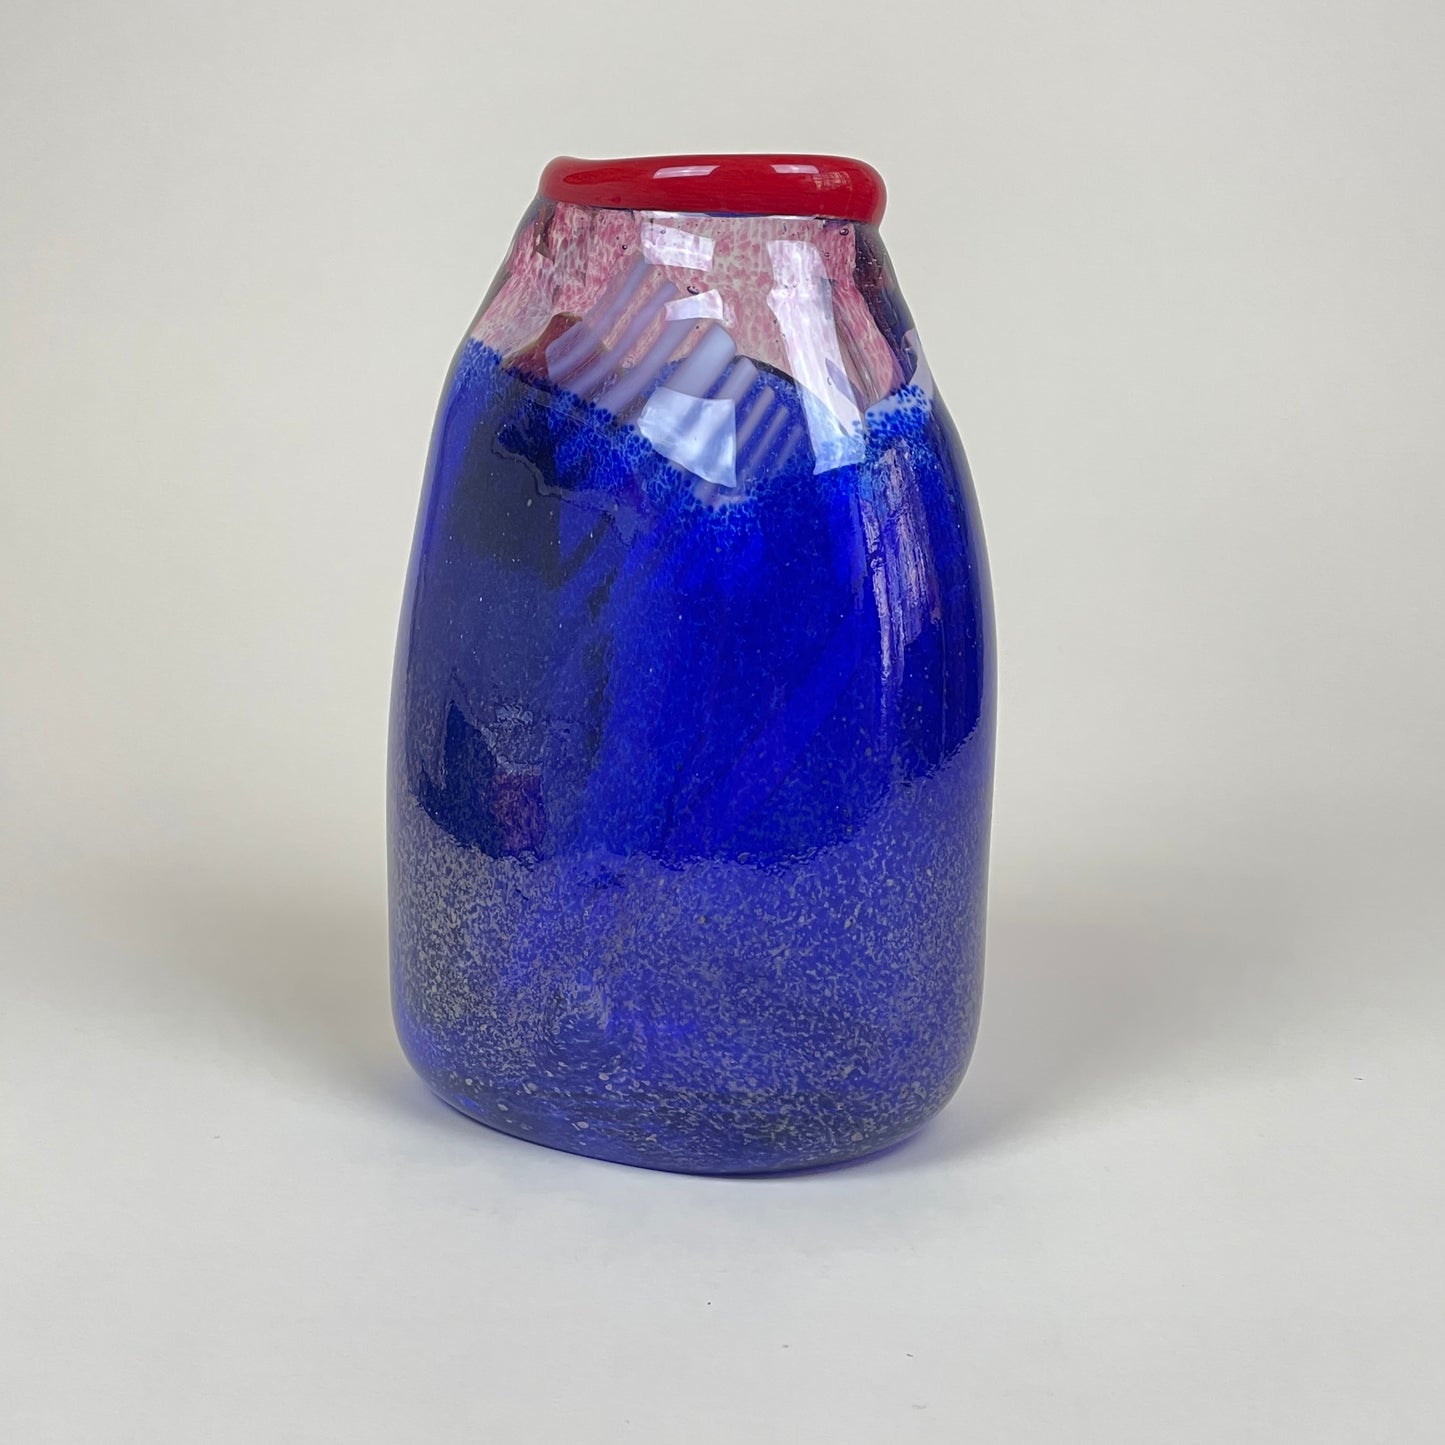 Glass vase by Aki Keitel